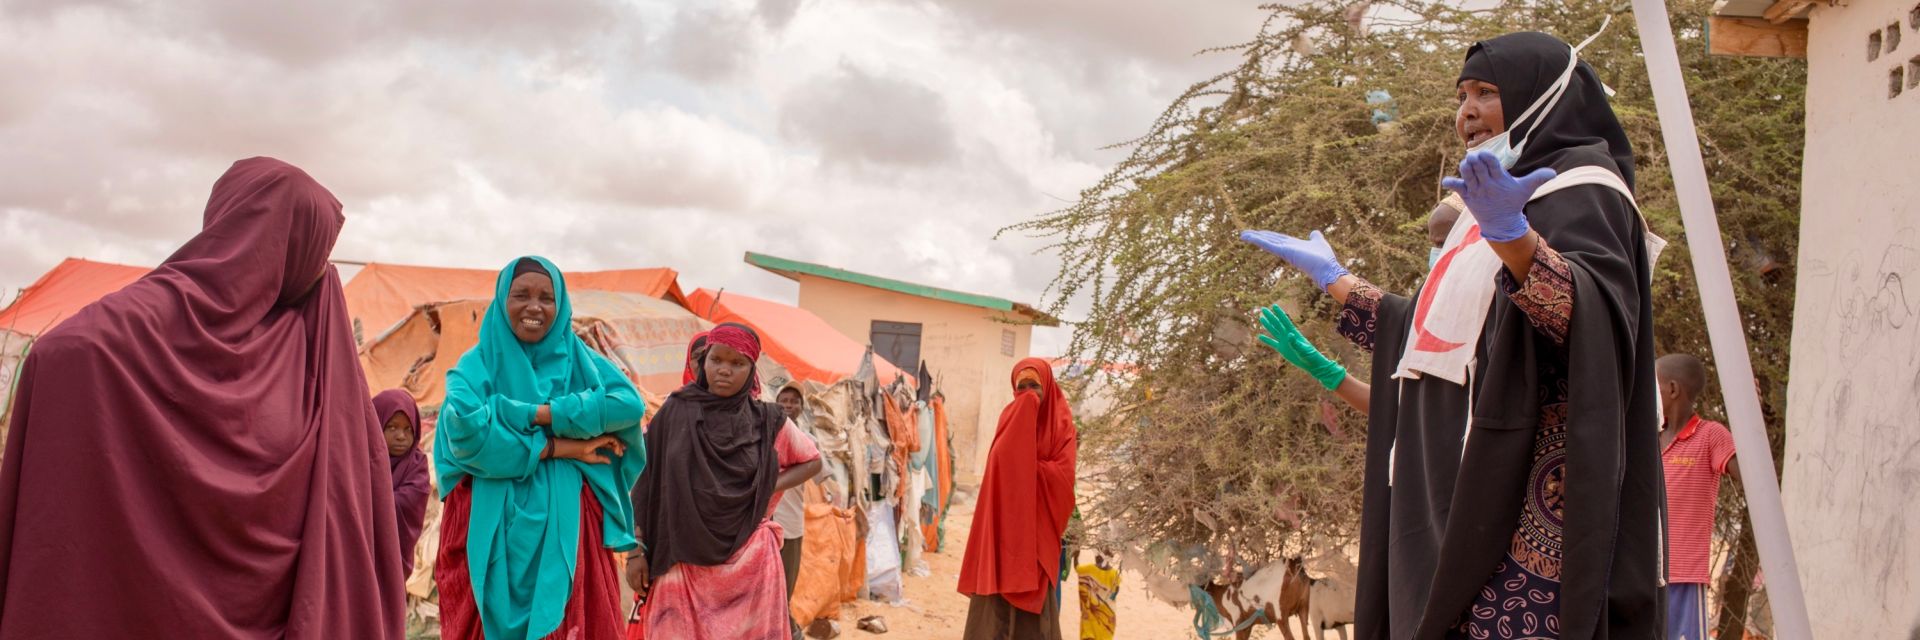 Roter Halbmond klärt in Somalia zu Corona auf